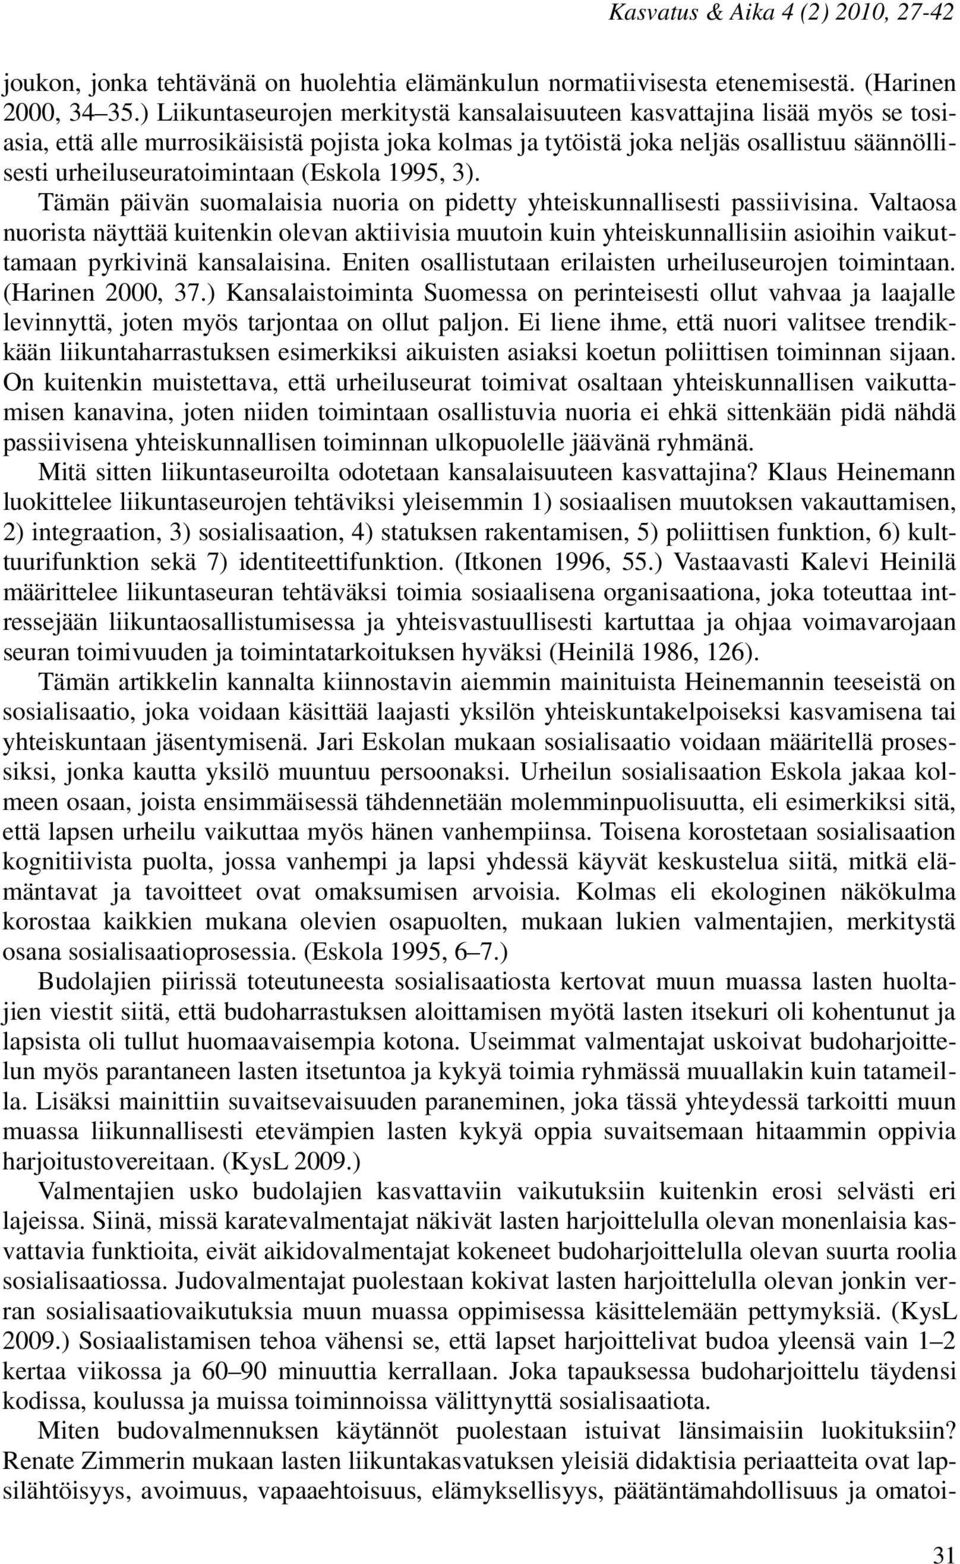 urheiluseuratoimintaan (Eskola 1995, 3). Tämän päivän suomalaisia nuoria on pidetty yhteiskunnallisesti passiivisina.